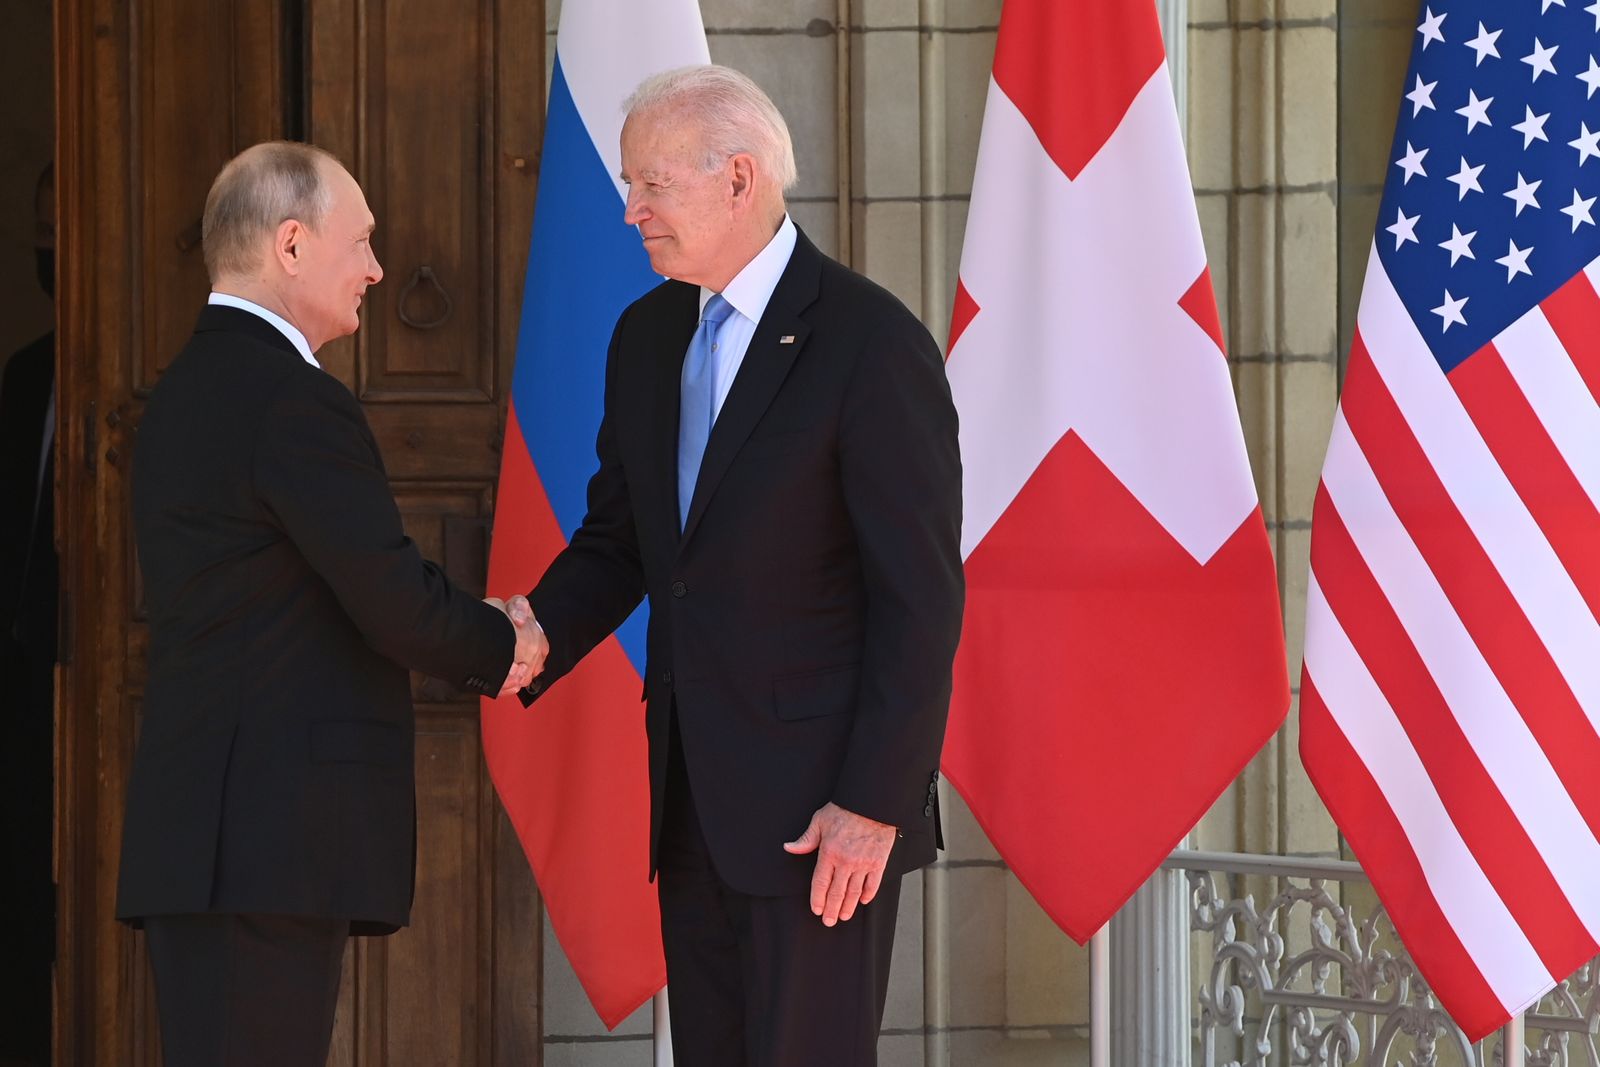 الرئيس الأميركي جو بايدن ونظيره الروسي فلاديمير بوتين يتصافحان لدى وصولهما لحضور القمة الأميركية الروسية في جنيف السويسرية - 16 يونيو 2021 - REUTERS